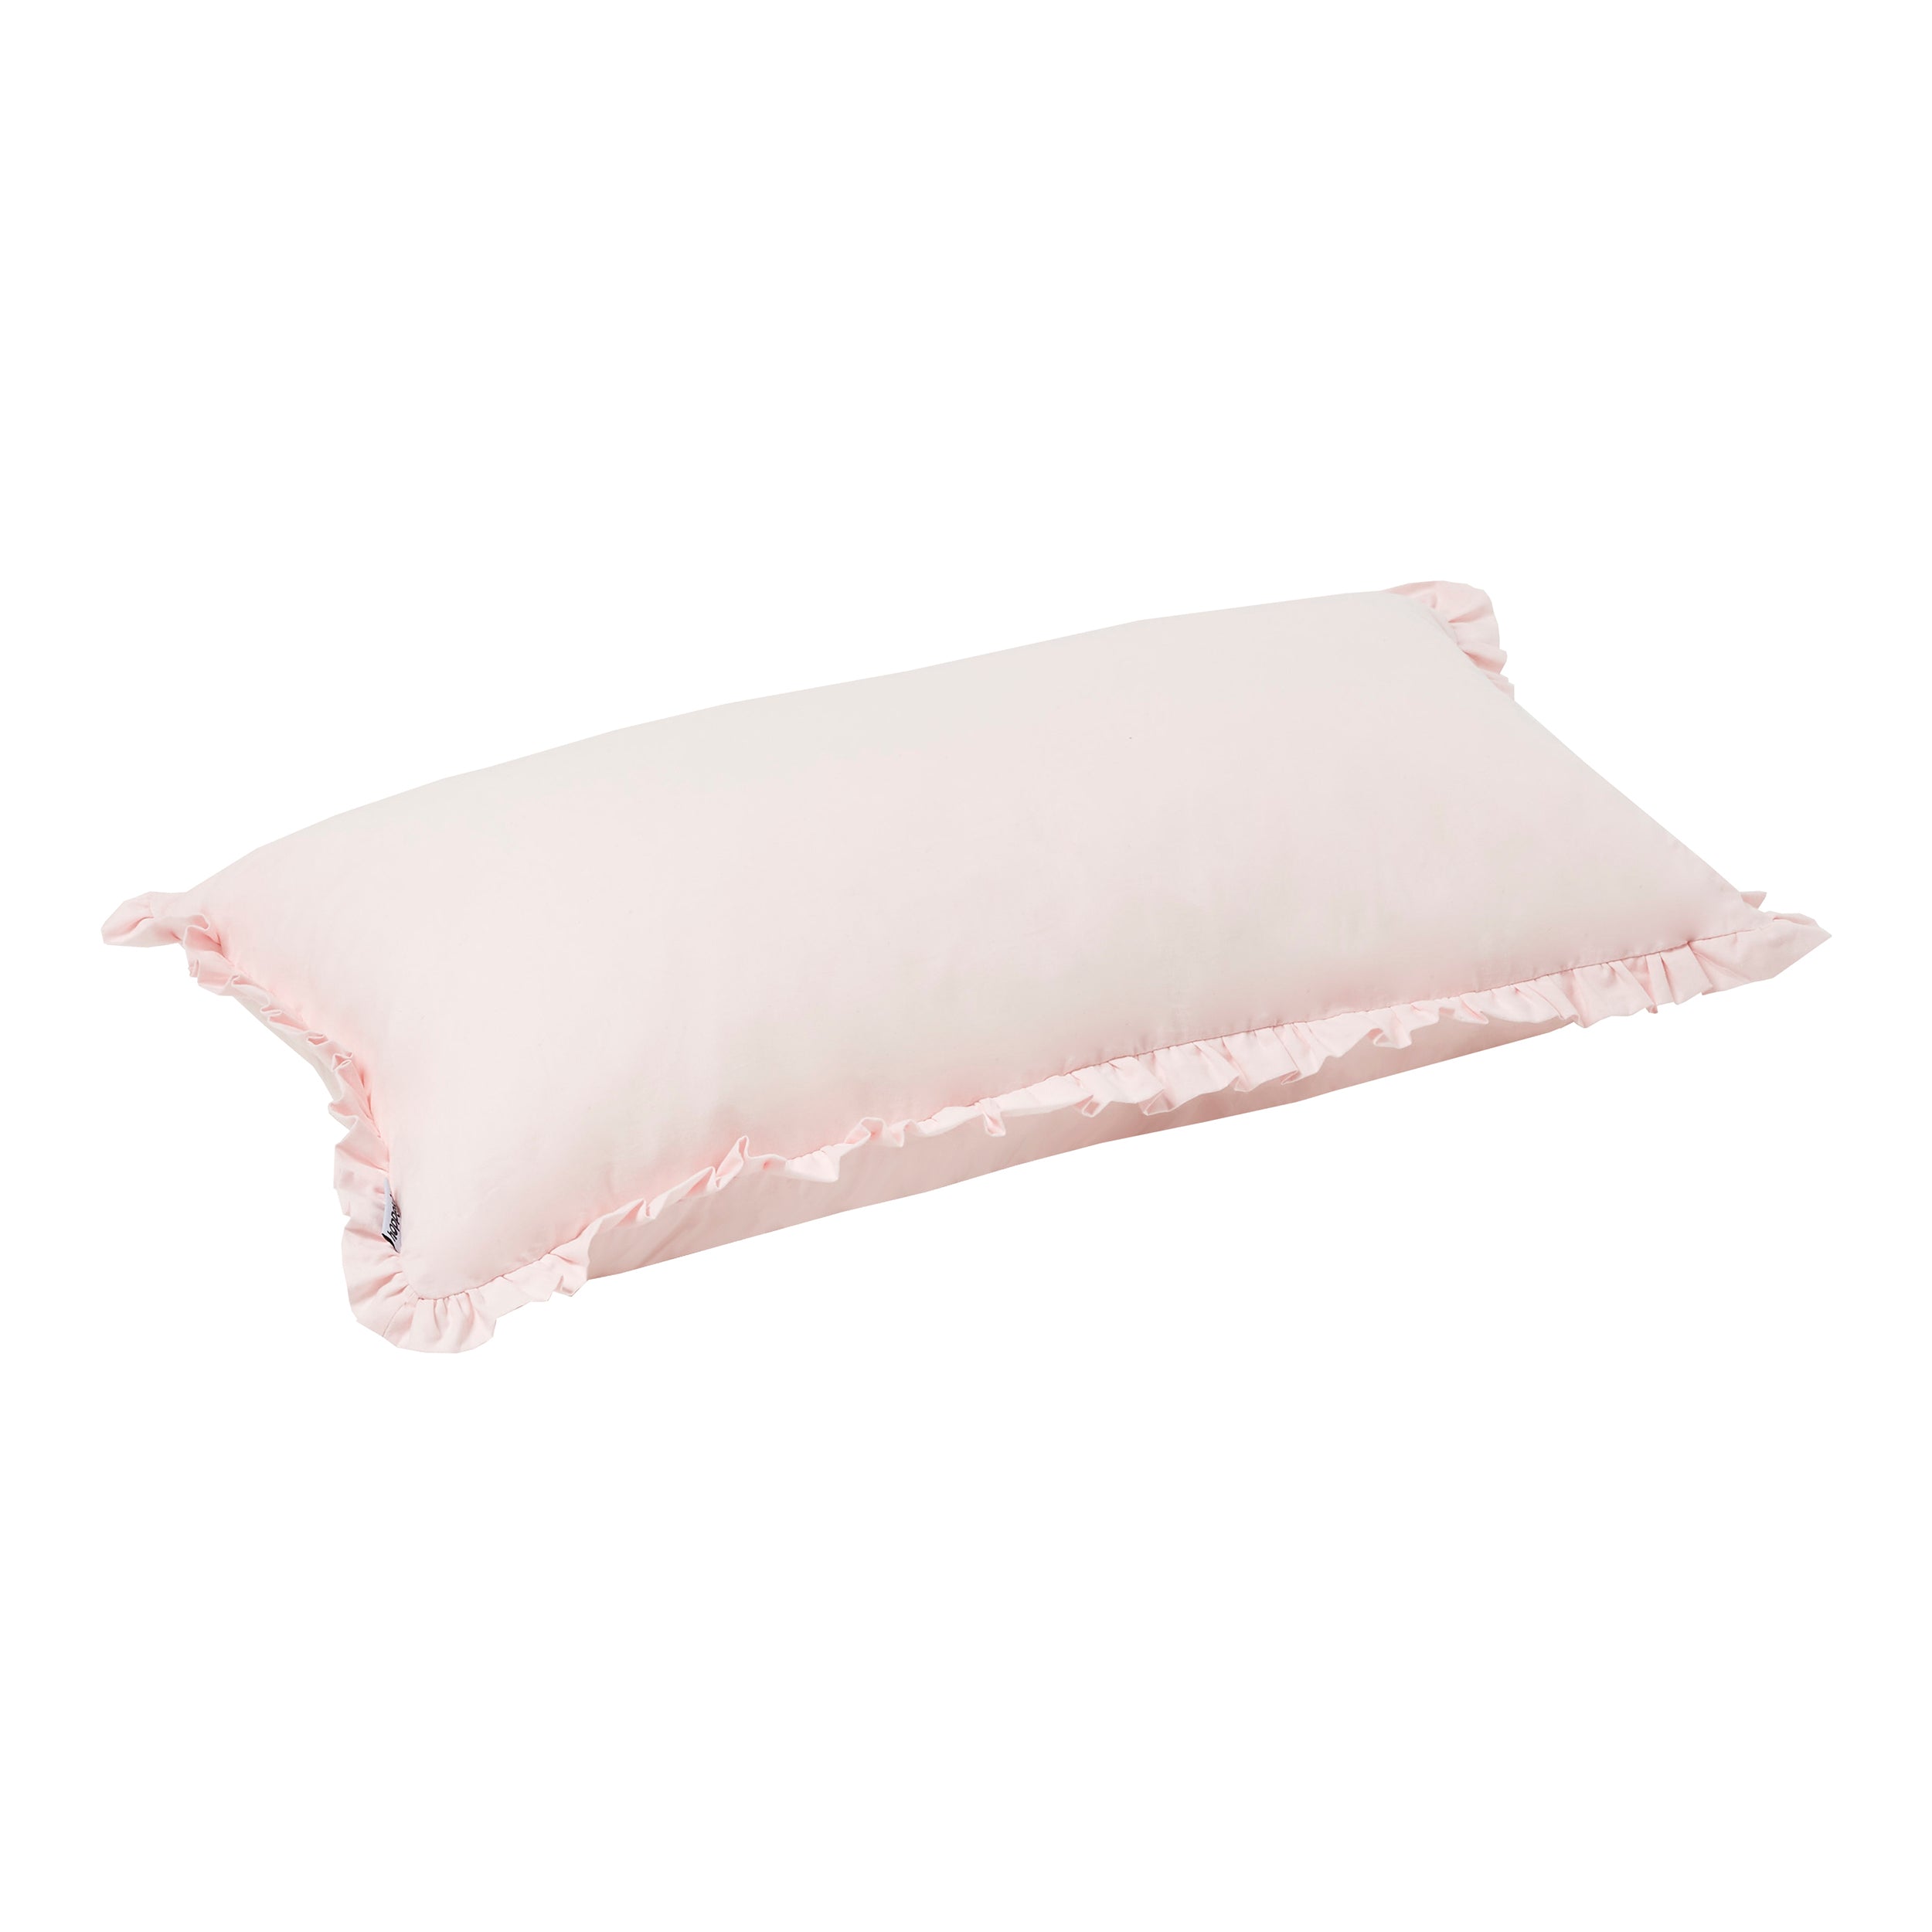 Hoppekids Winter Wonderland rectangular pillow with ruffles